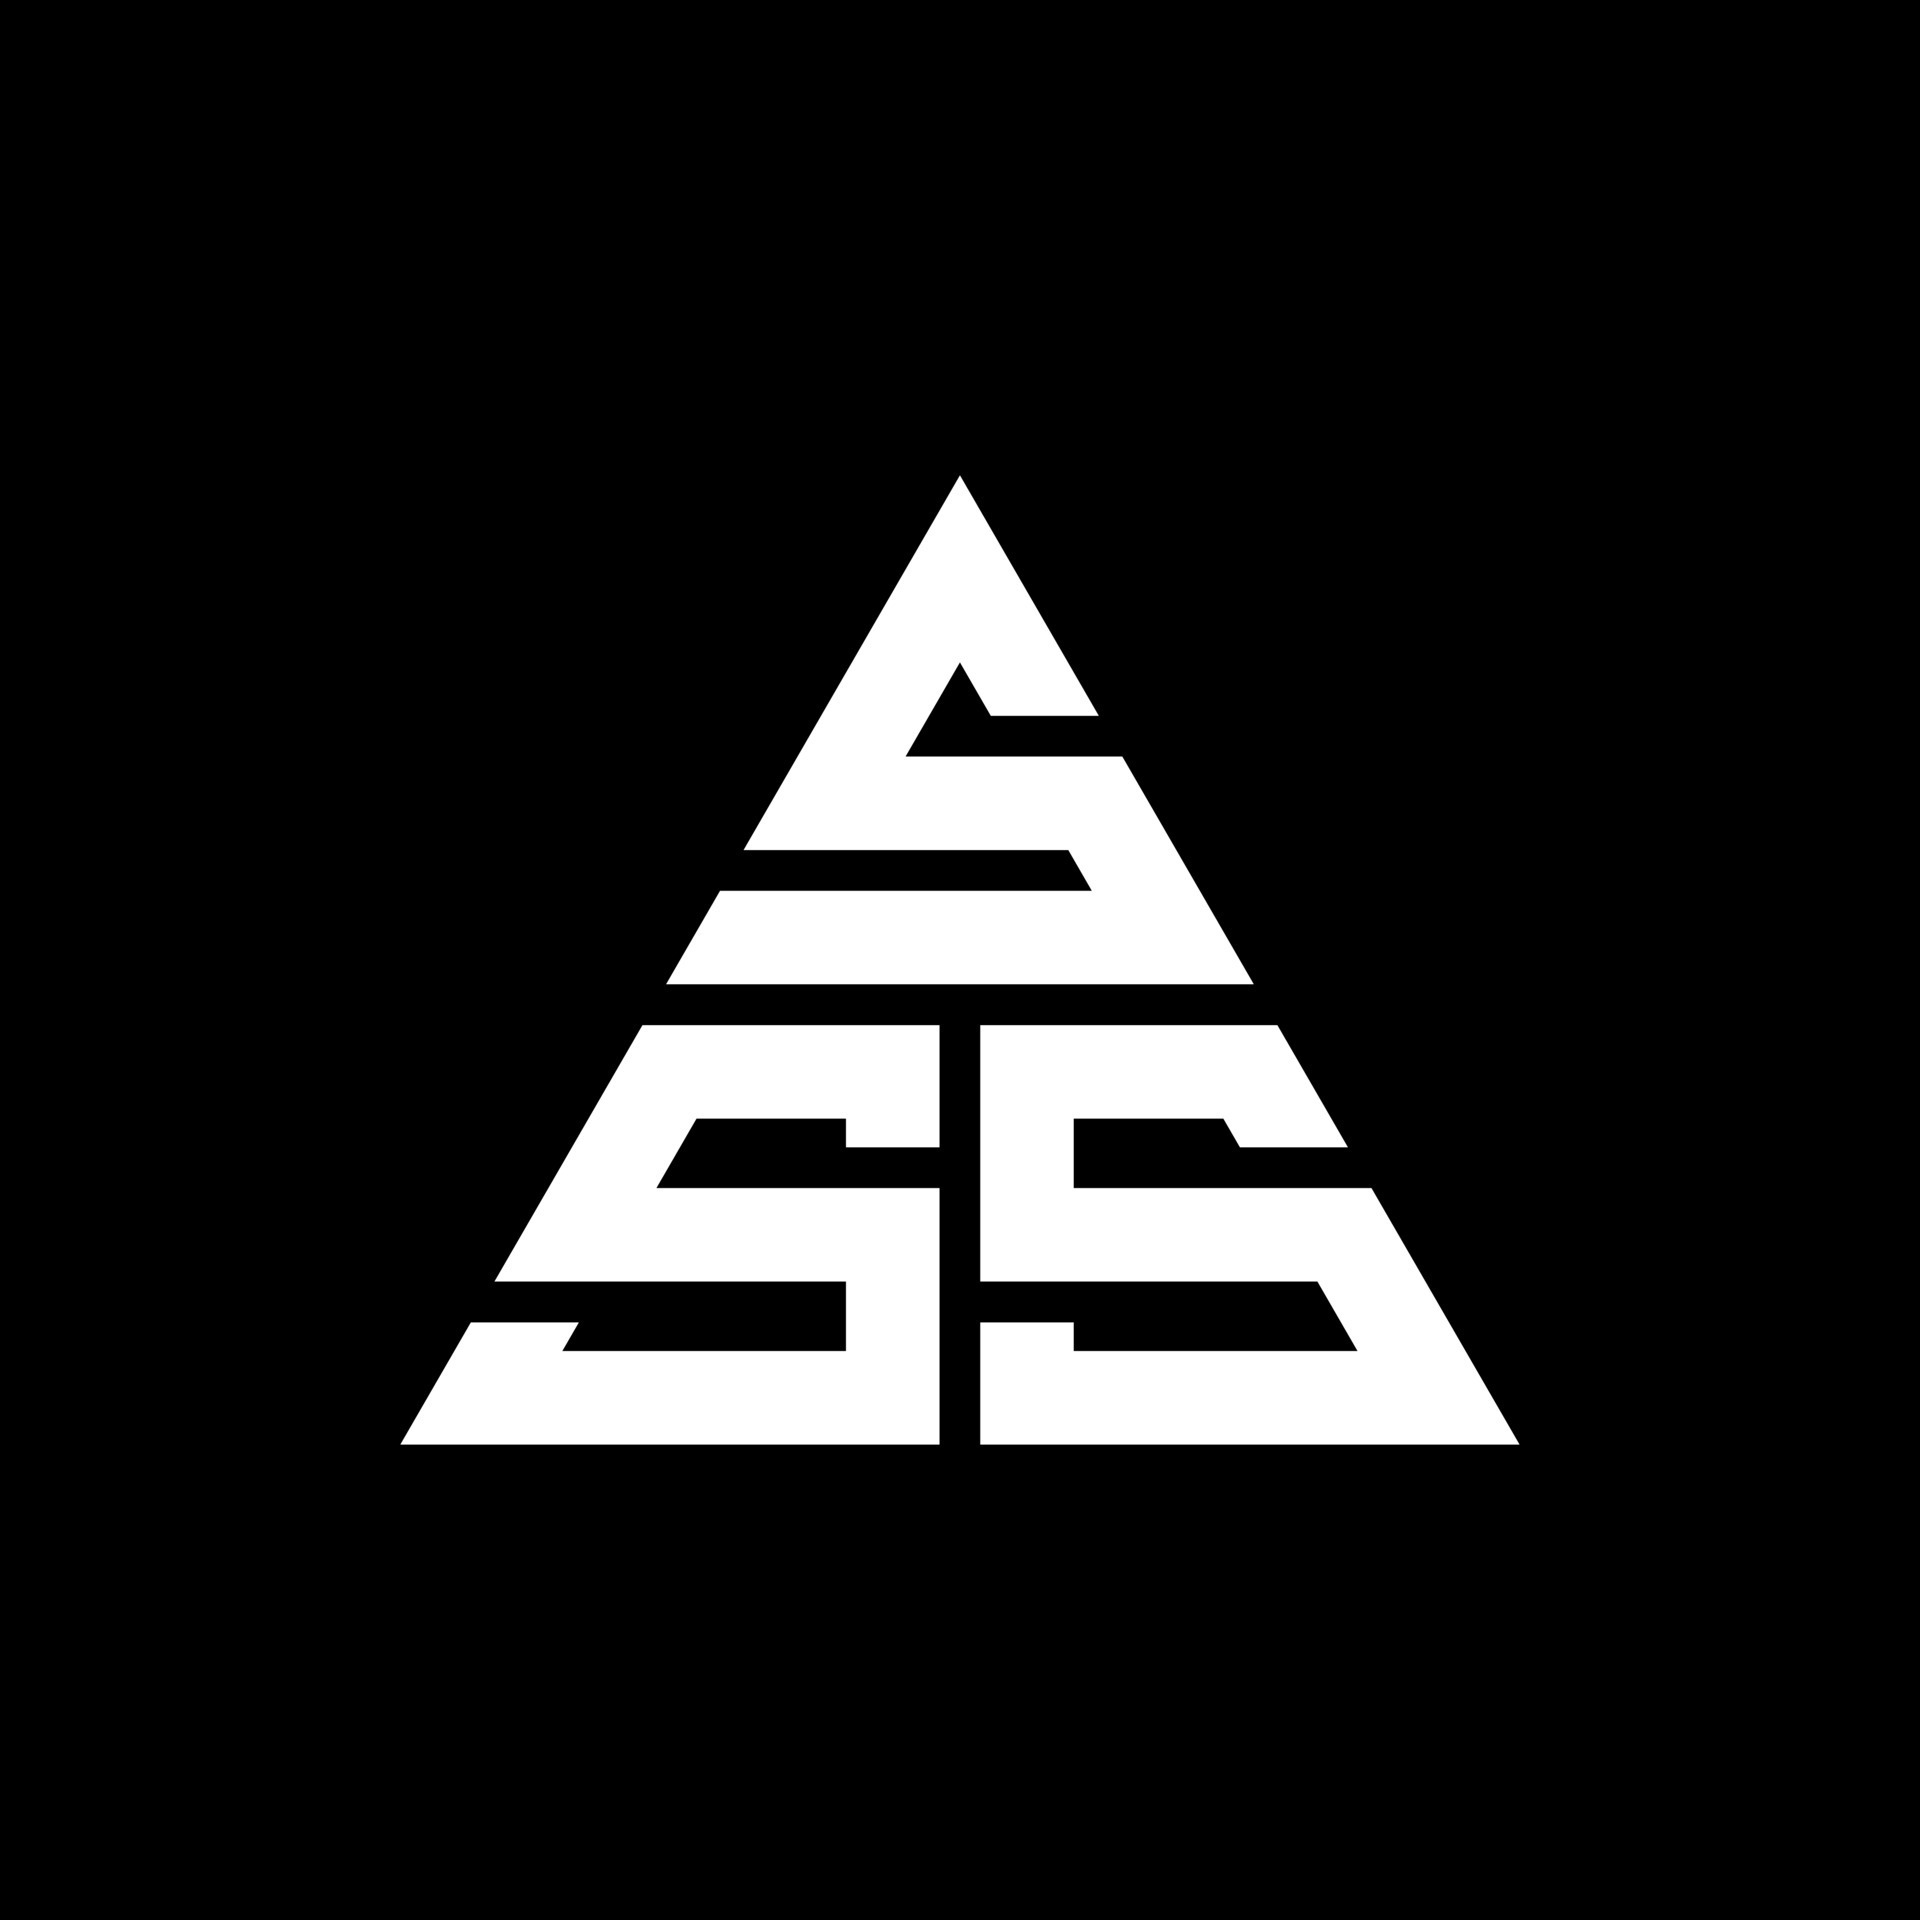 Vetor de sss letter original monogram logo design do Stock